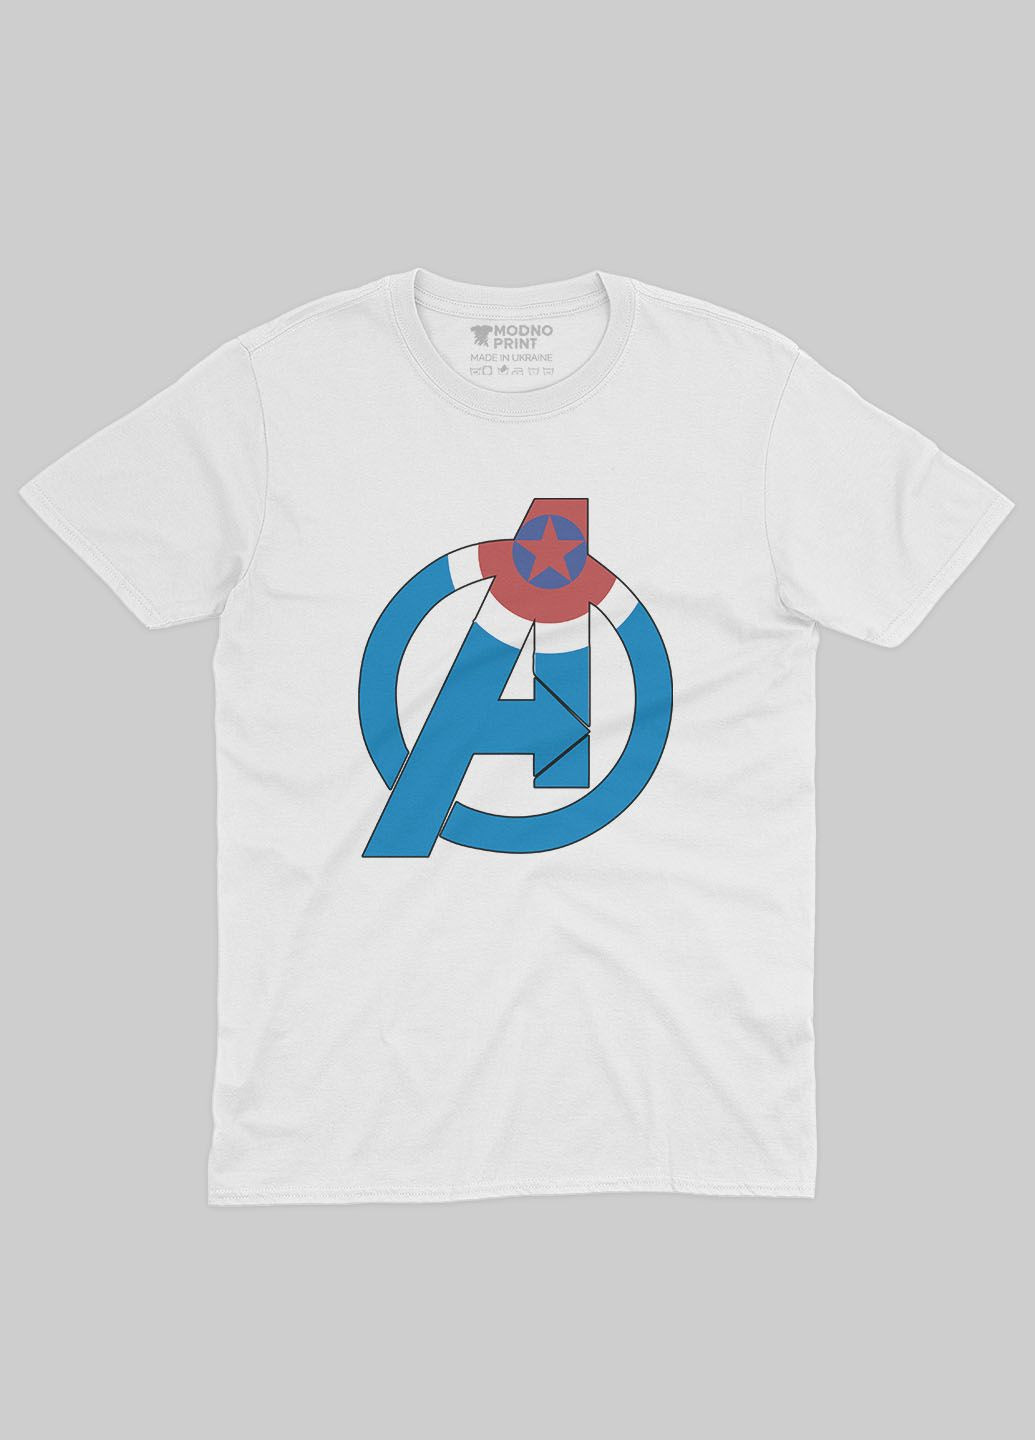 Біла демісезонна футболка для хлопчика з принтом супергероя - капітан америка (ts001-1-whi-006-022-012-b) Modno